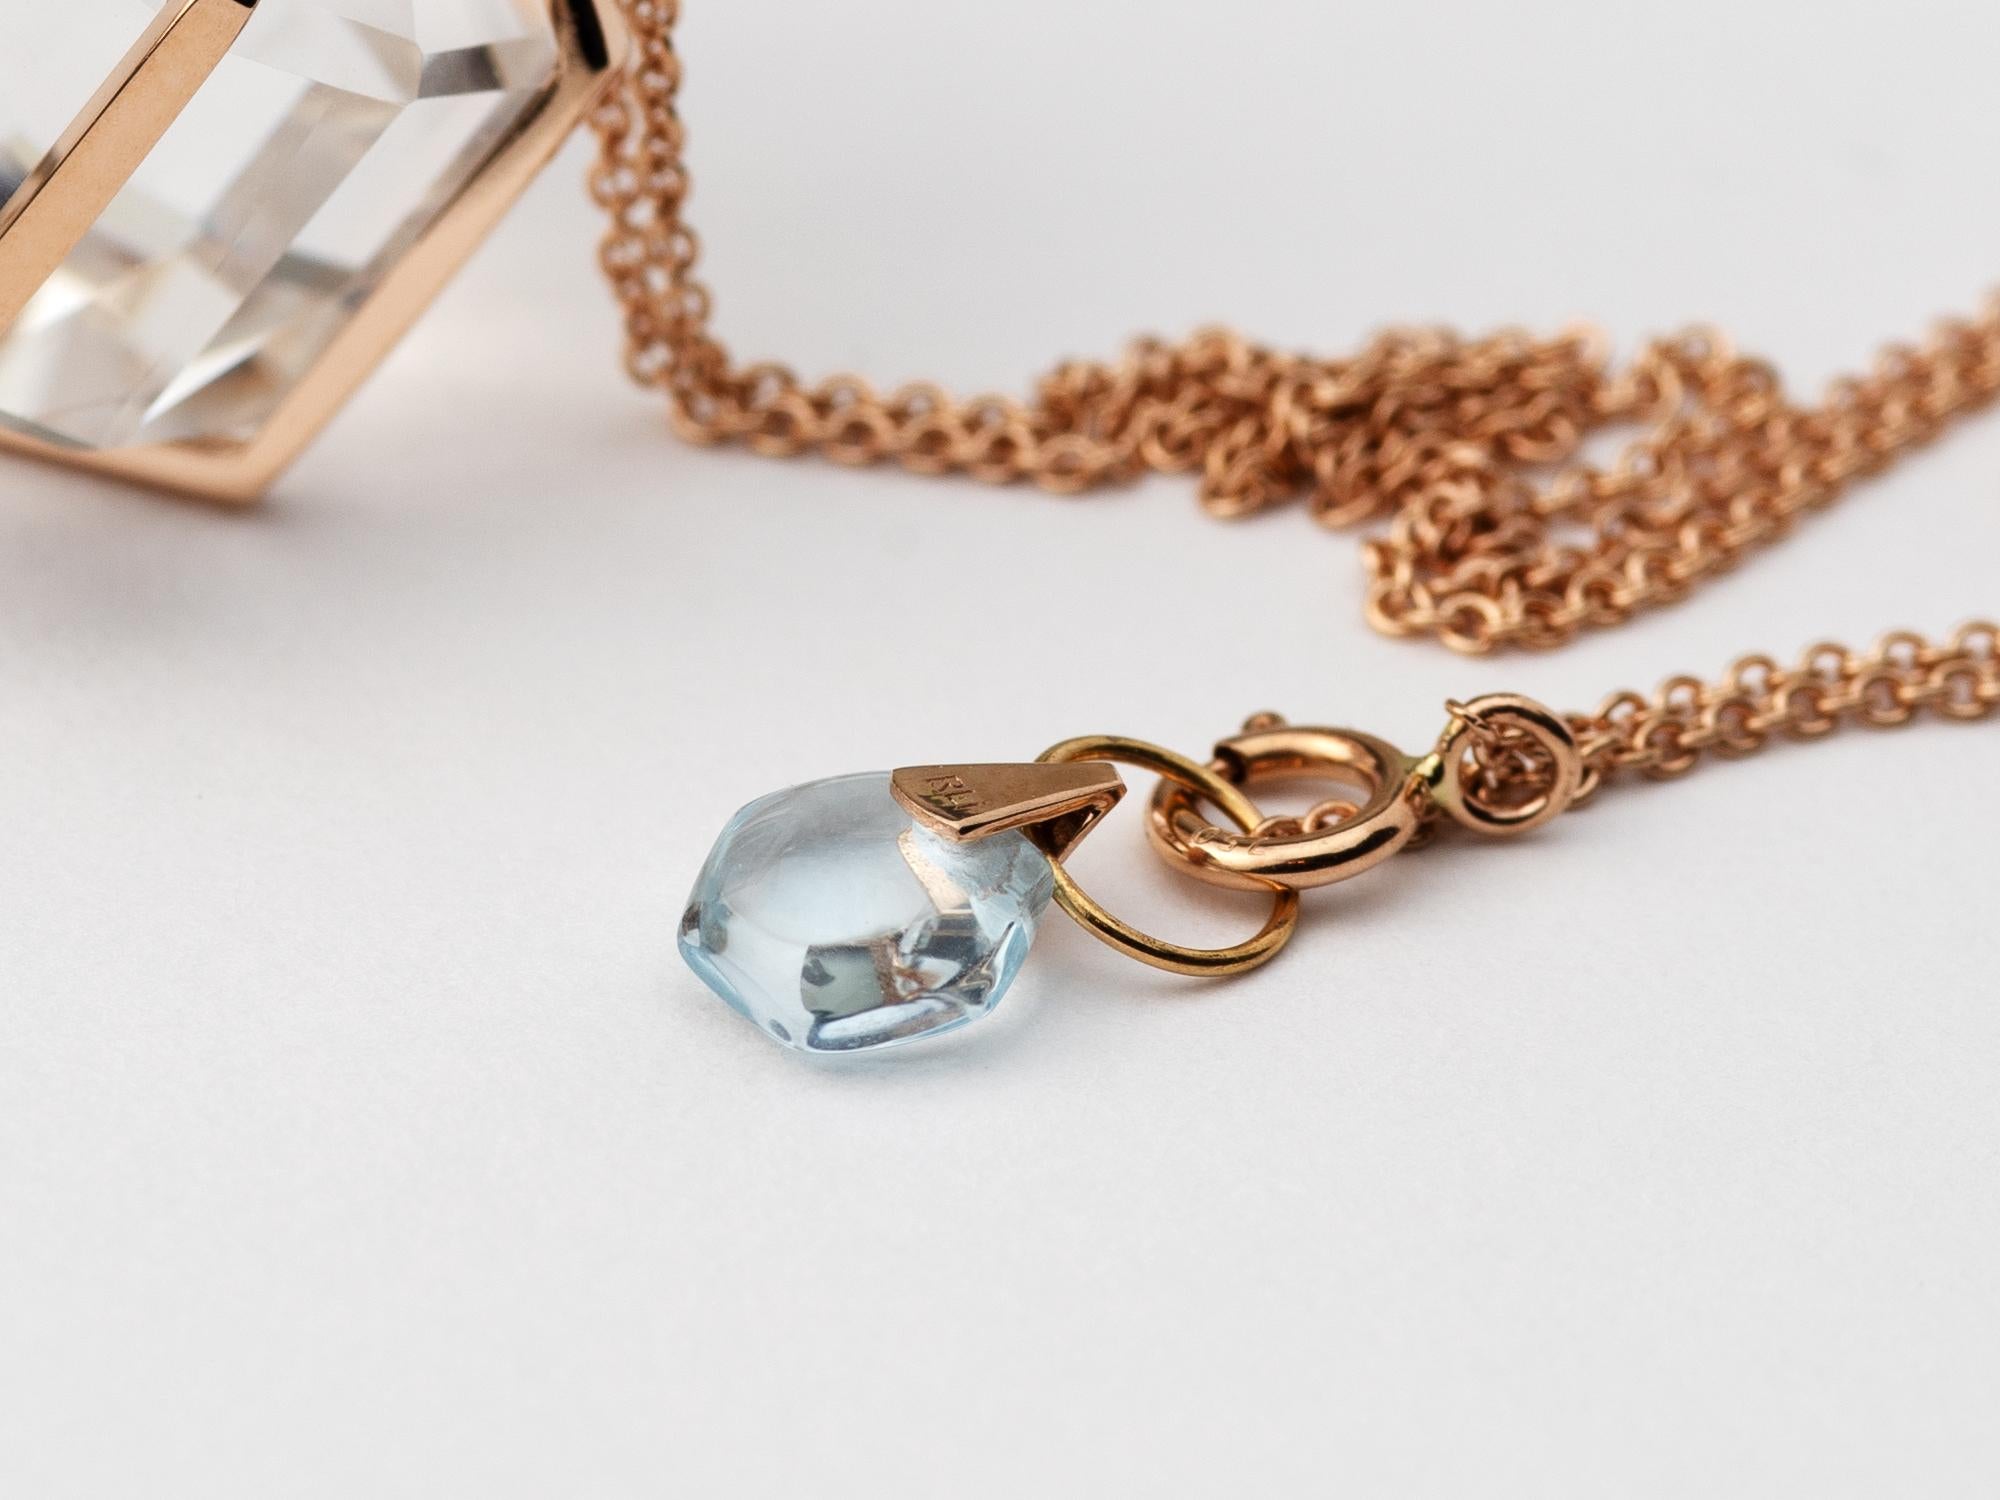 Mixed Cut Rebecca Li Six Senses Talisman Necklace 18 Karat Gold Large Natural Rock Crystal